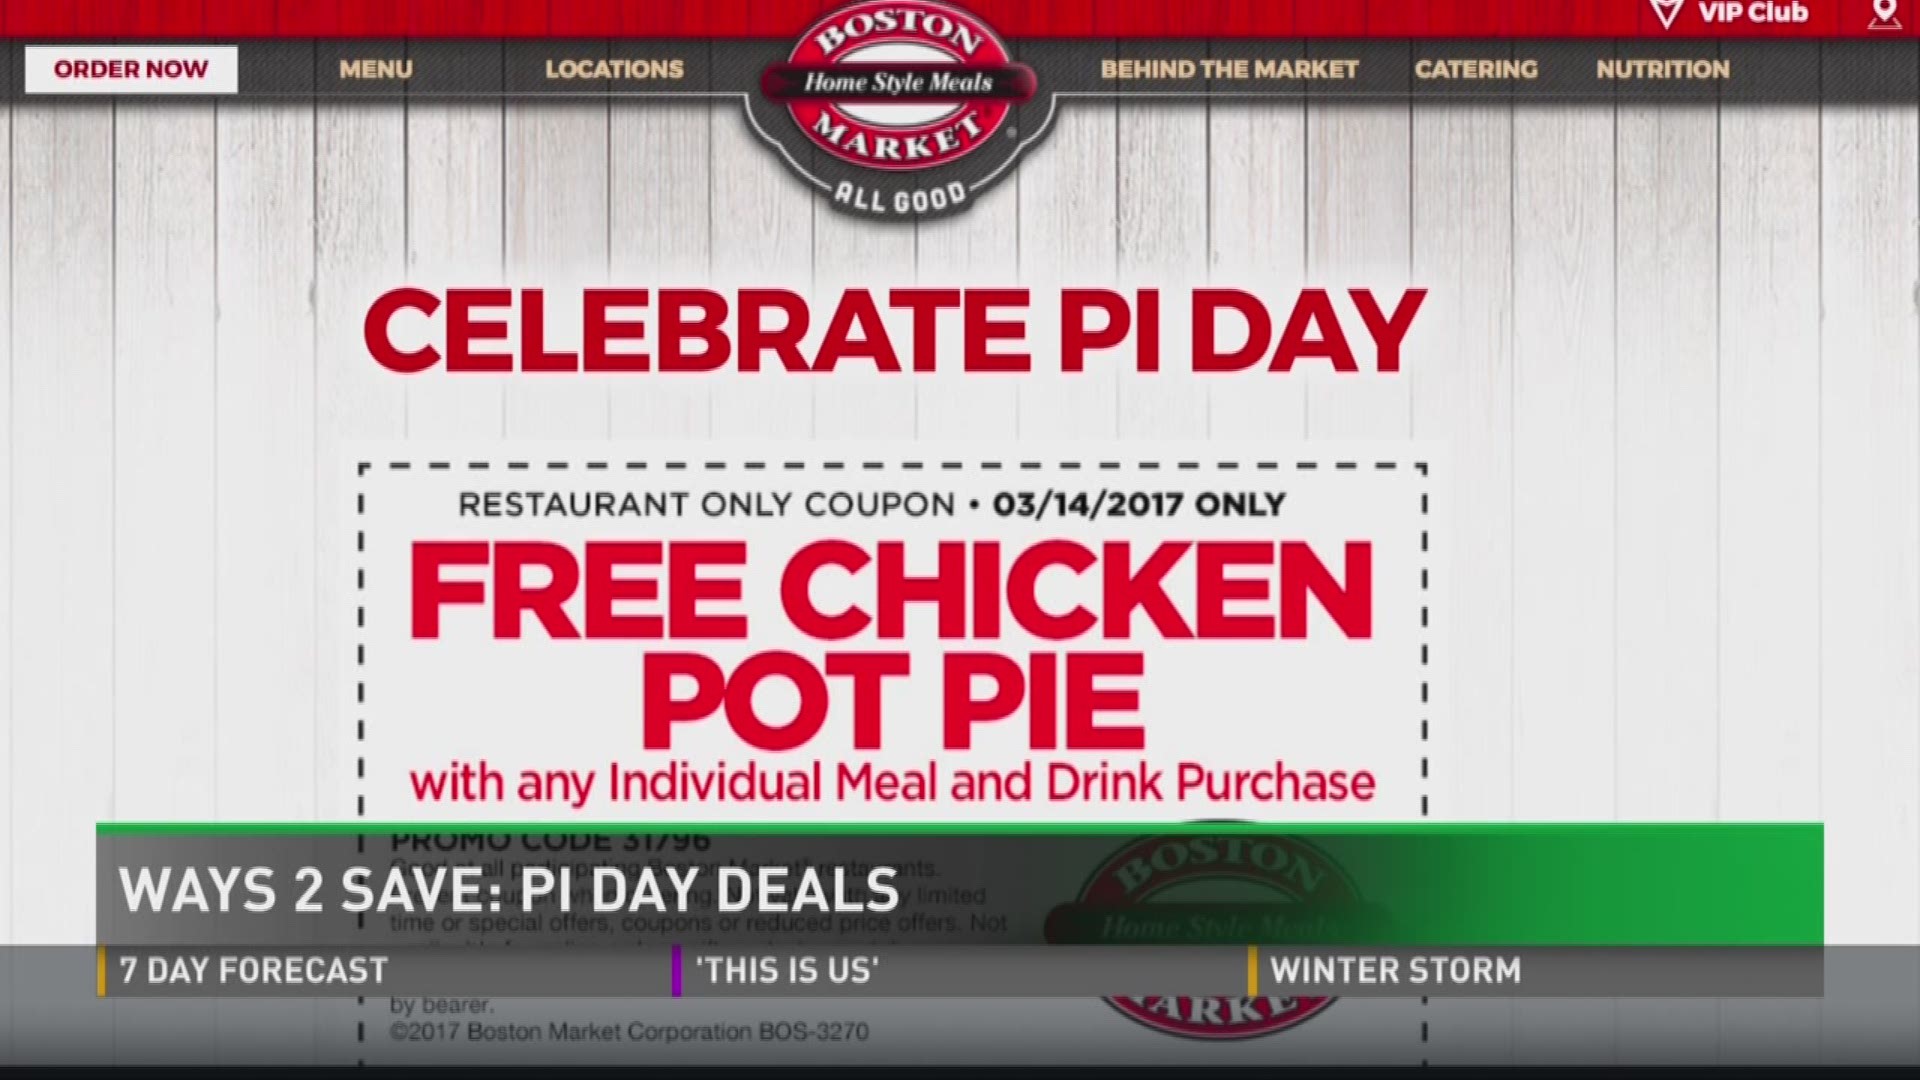 Ways 2 Save: Pi Day Deals